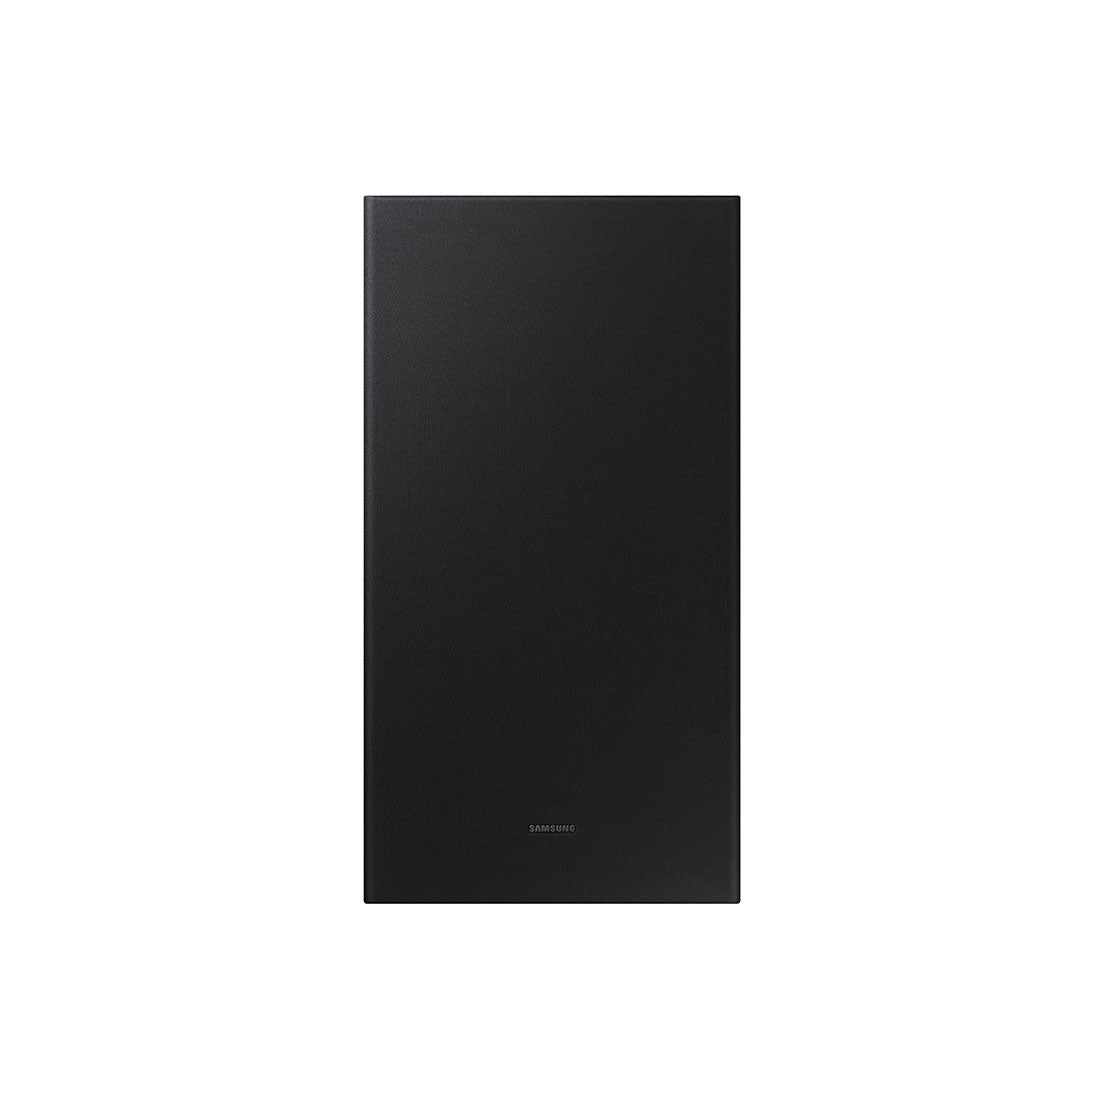 Samsung HW-B650/ZC 3.1 Channel Soundbar – 2022 Model